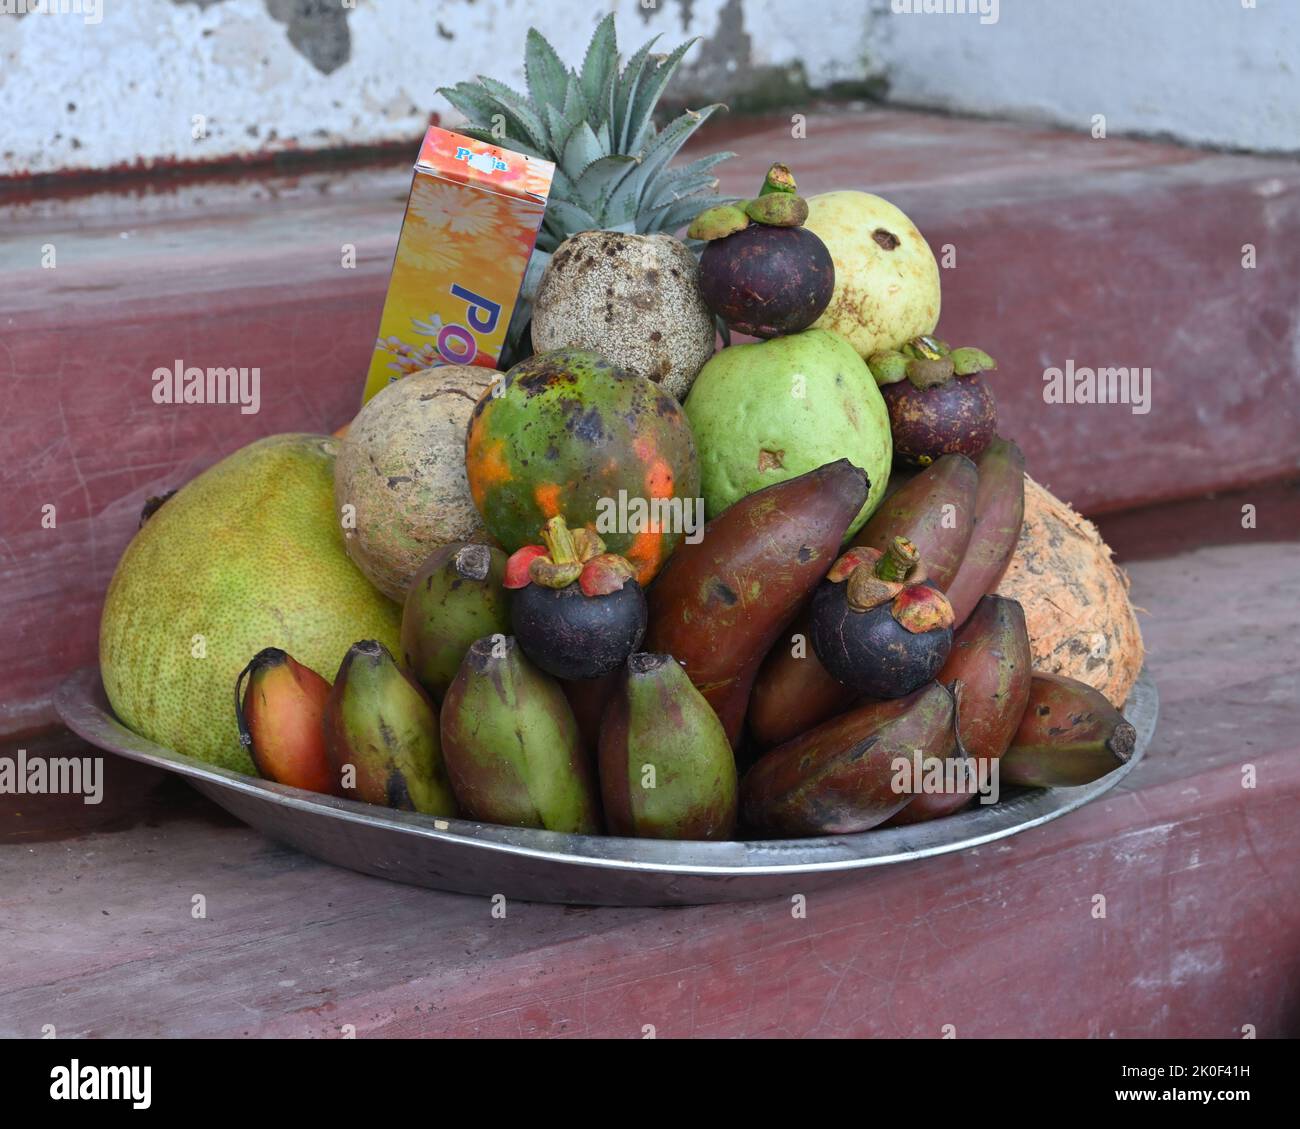 Eine hinduistische Puja-Obstschale voll mit reifen Früchten und einer Schale entfernt und dekoriert Kokosnuss und Räucherstäbchen Paket auf einer kleinen Zementbühne für den Verkauf in der Nähe Stockfoto